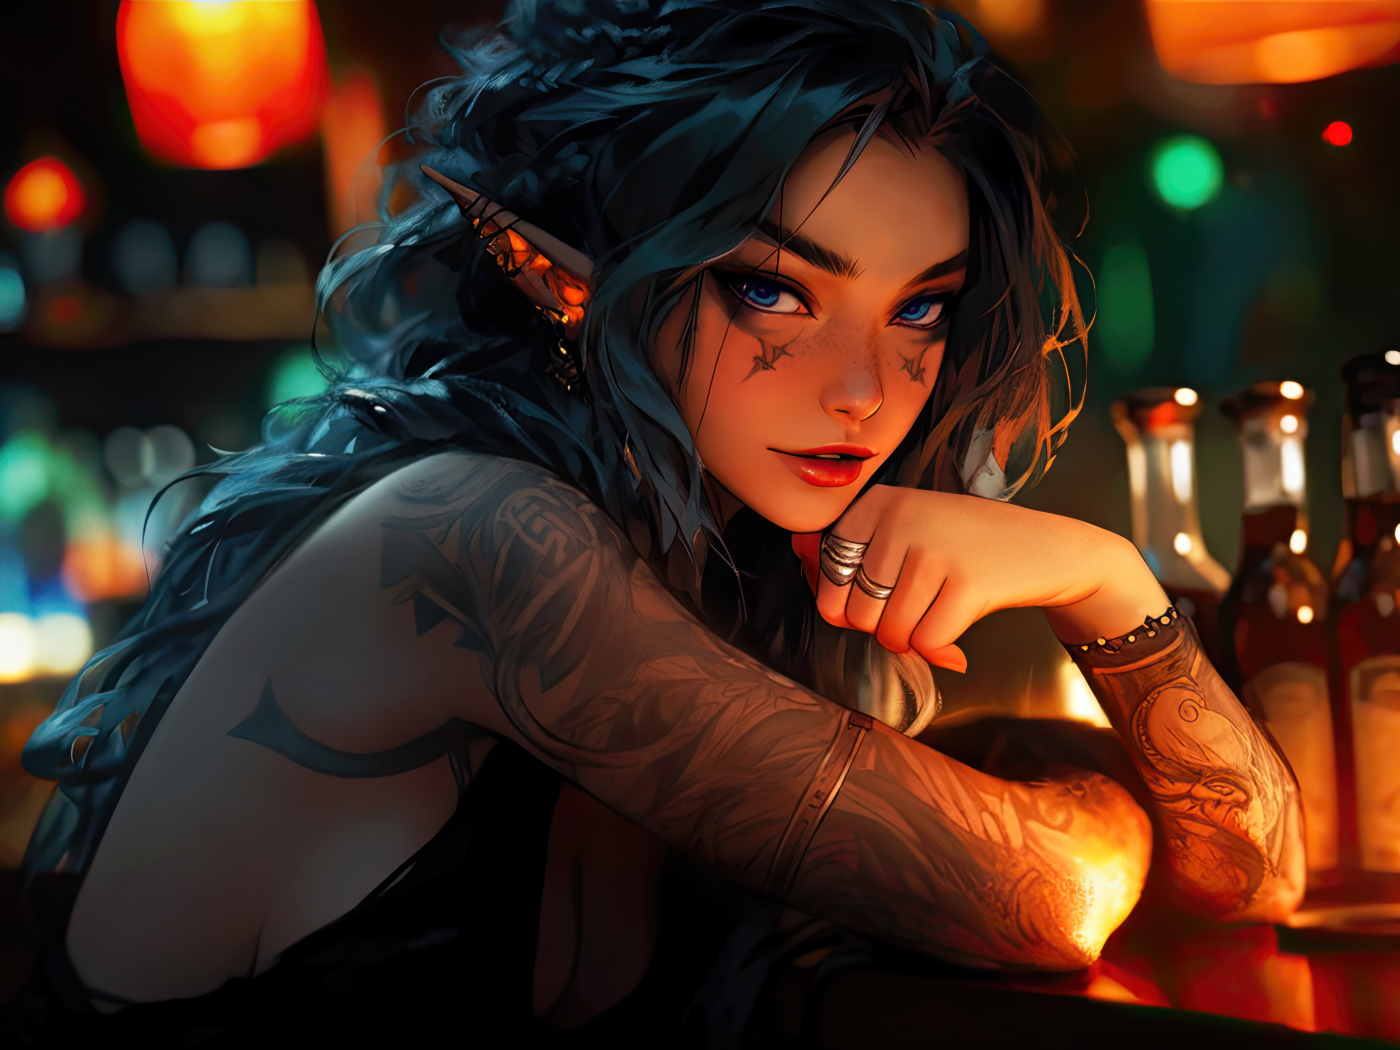 Девушка аниме с татуировками сидит в баре